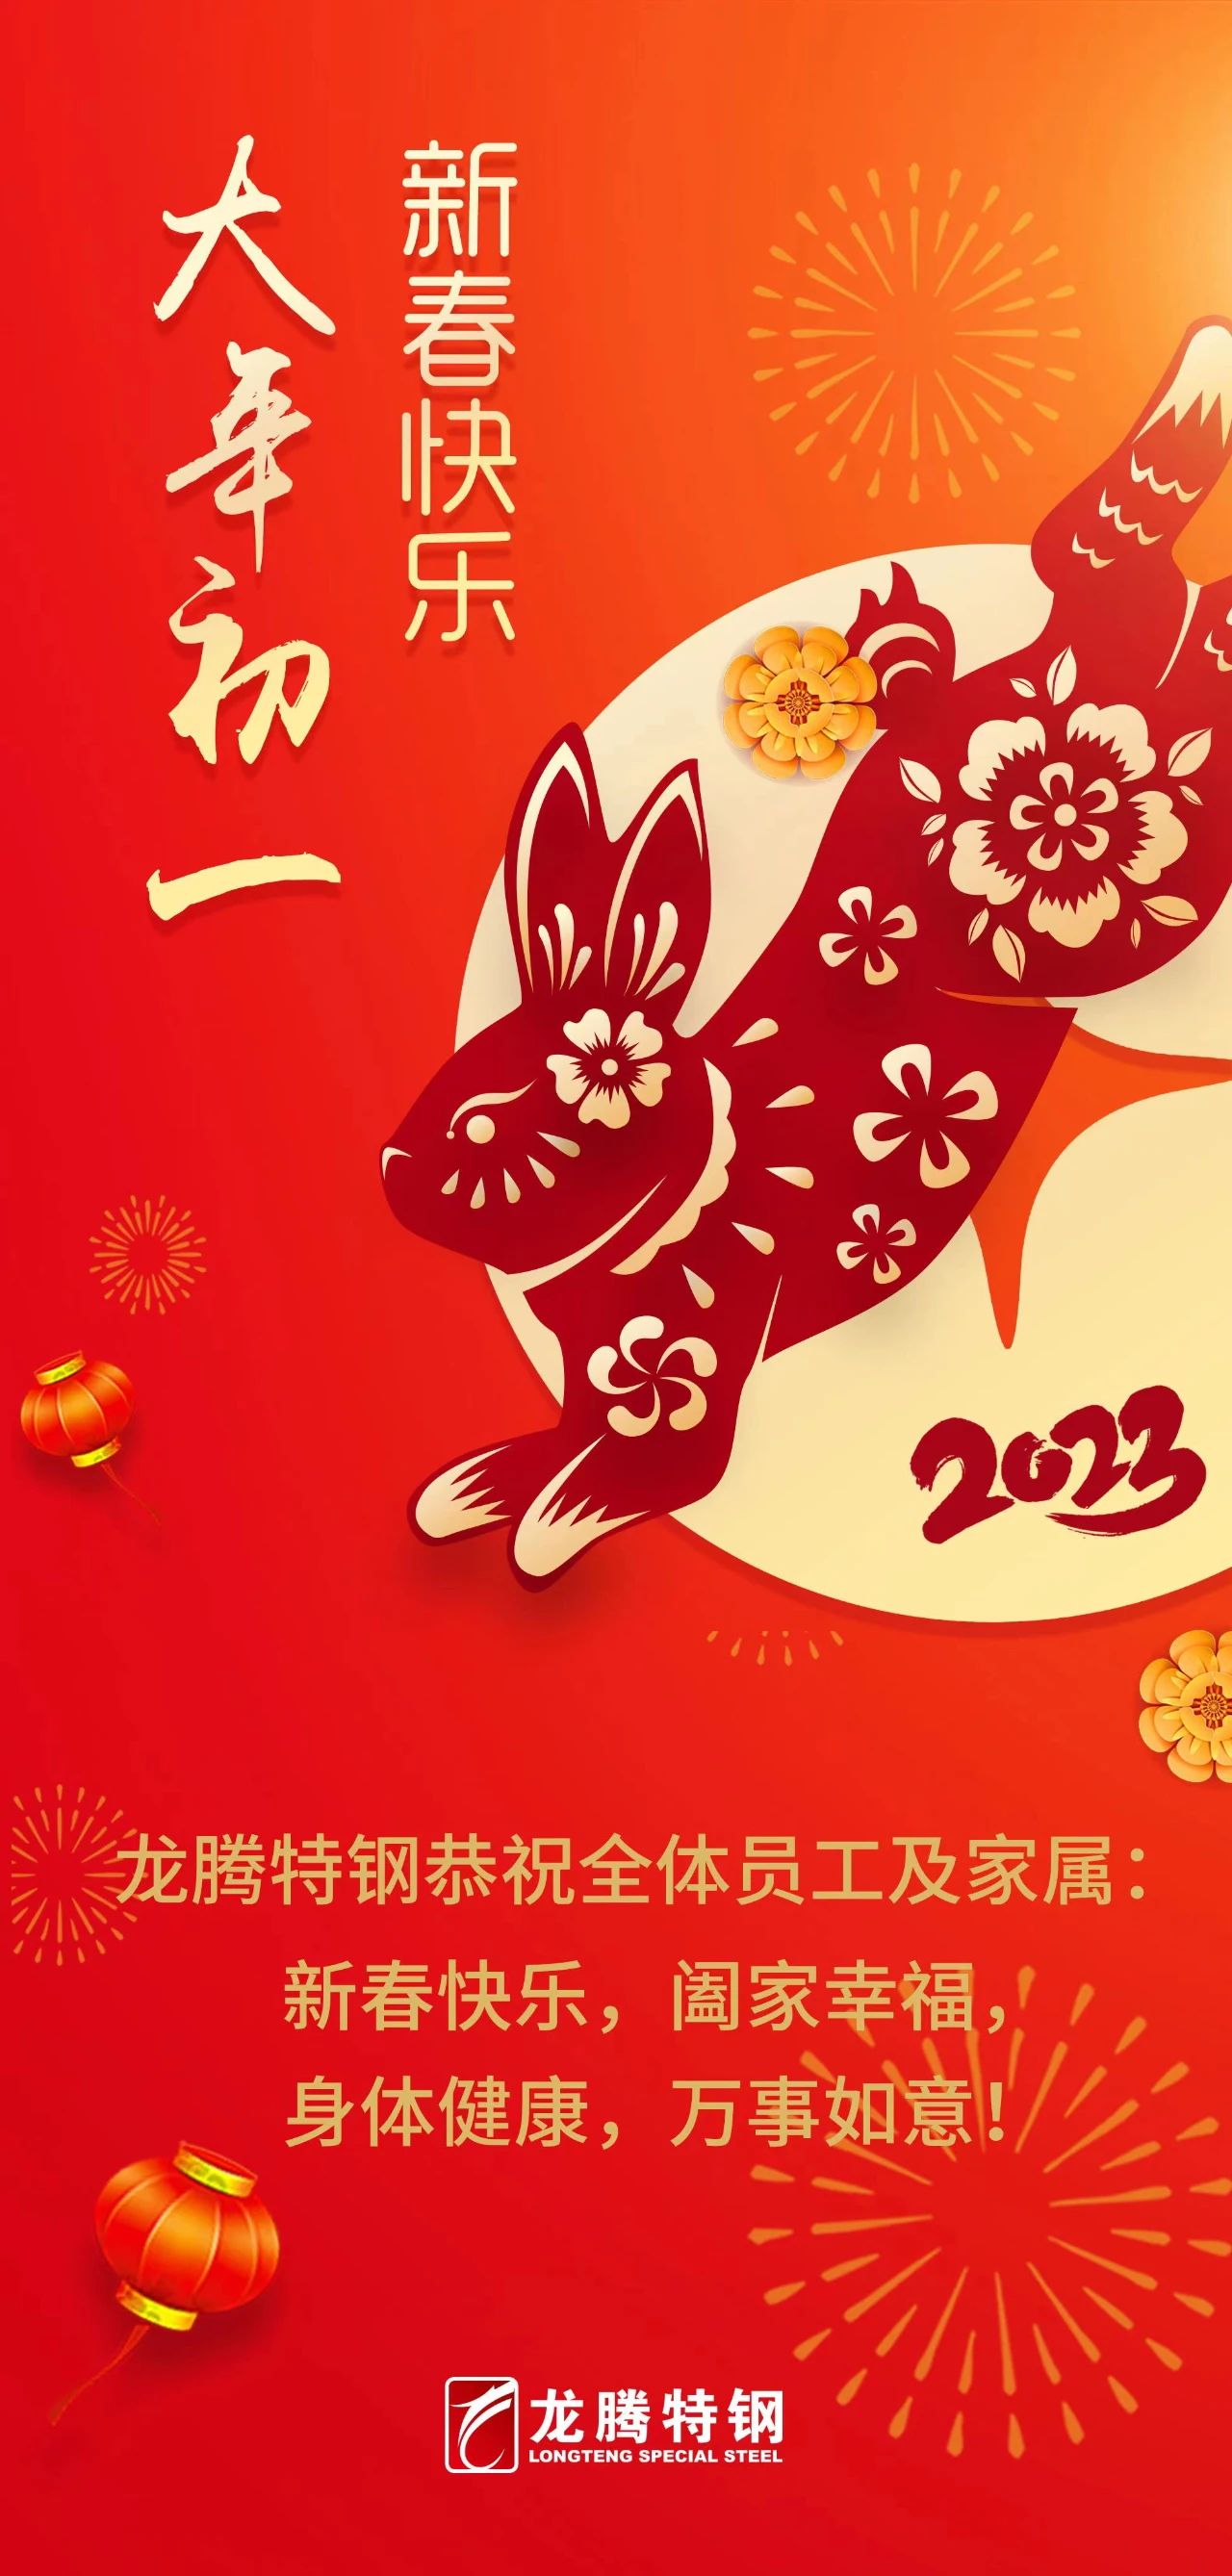 龍騰特鋼恭祝全體員工新春快樂！